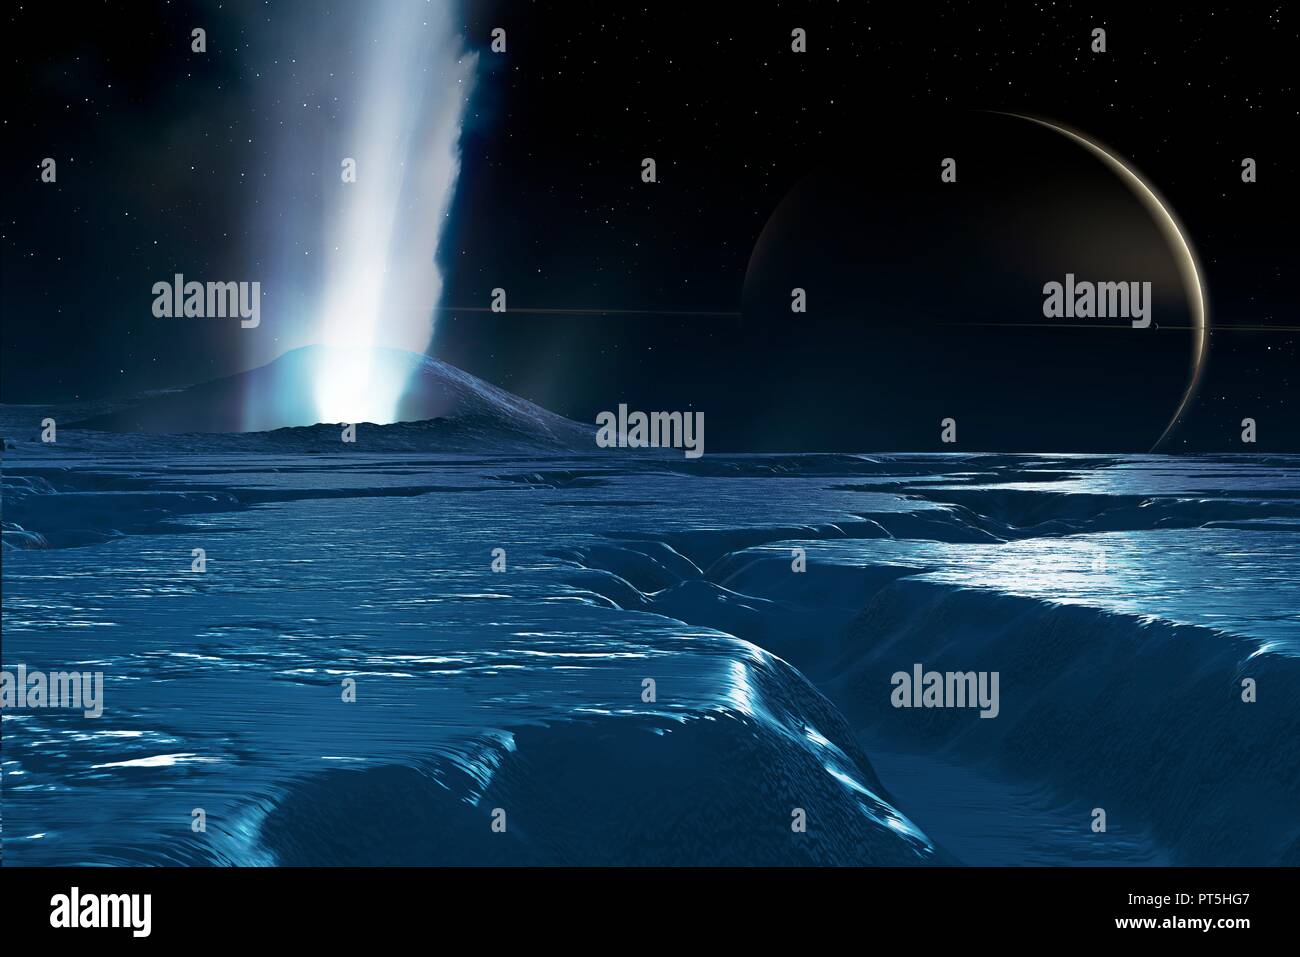 Wasser plumes auf Enceladus, Illustration. Enceladus ist eine mittelgroße Satelliten des Saturn, ca. 500 km über, bekannt seit 1789. Es ist nur ein Zehntel der Größe des größten Saturnmond, Titan. Im Jahr 2005 hat die Raumsonde Cassini entdeckt, dass diese relativ kleine Welt ist, überraschend, geologisch aktiv. Geysir - wie Wasserstrahlen wurden gesehen, Belüftung von der Mond südlich-polare Oberfläche ices, belüftet, durch einen Prozess namens cryovolcanism ('kalten Vulkanismus"). Einen anderen Satelliten, Mimas, ist auf Saturns Flugzeug gesehen. Stockfoto